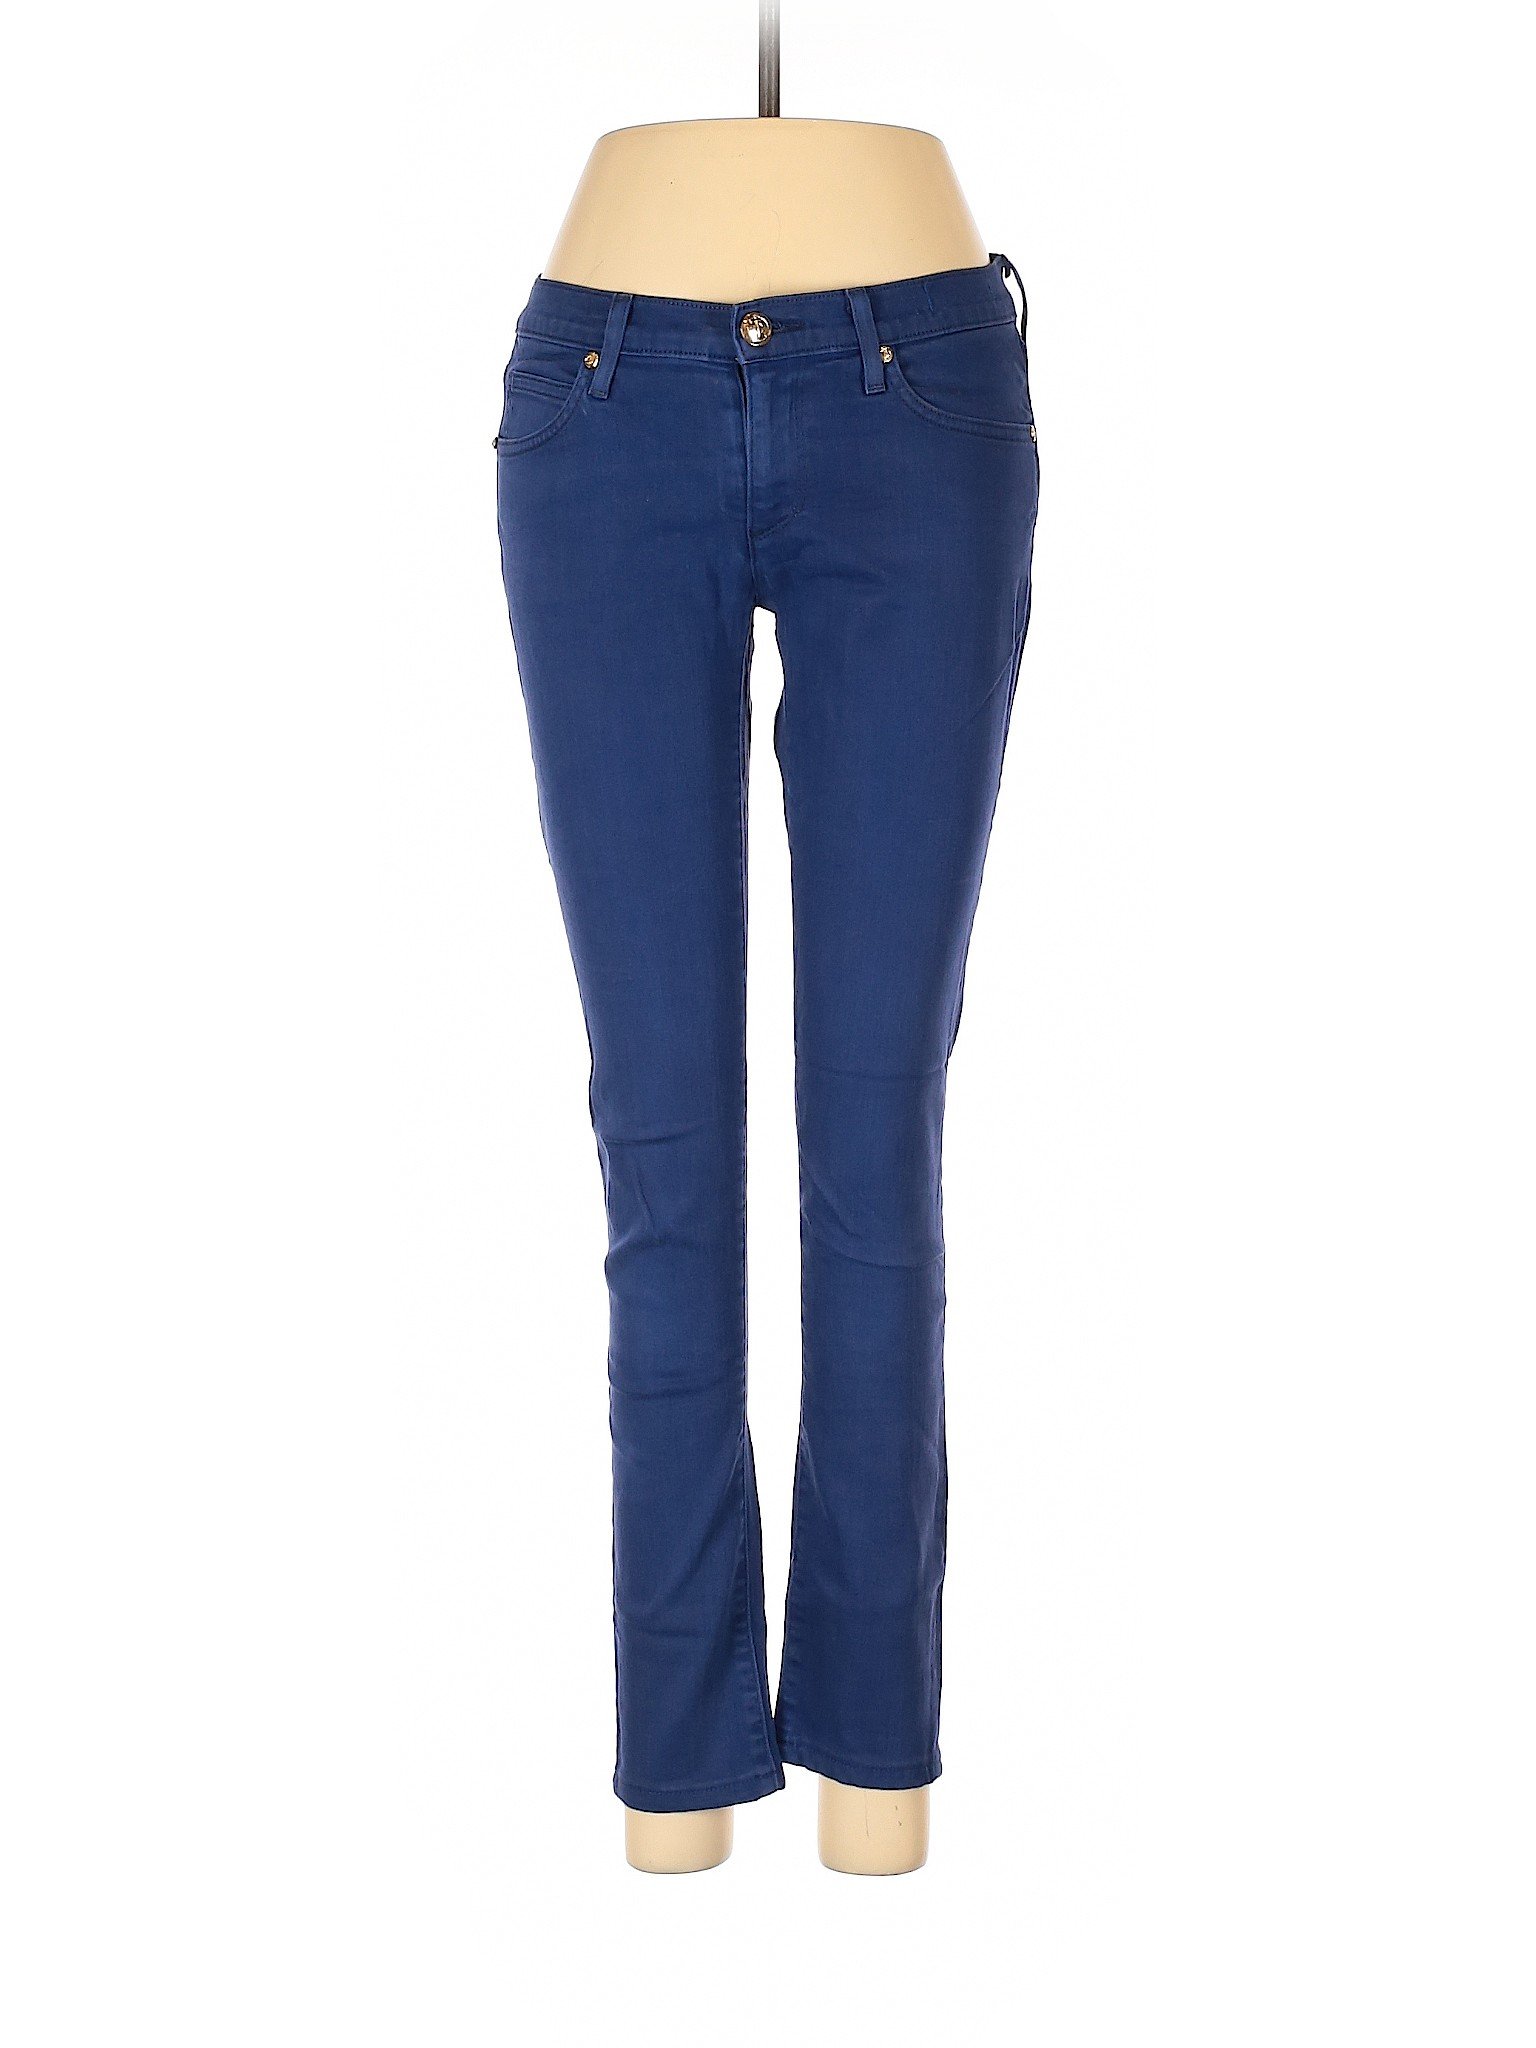 Juicy Couture Women Blue Jeans 27W | eBay